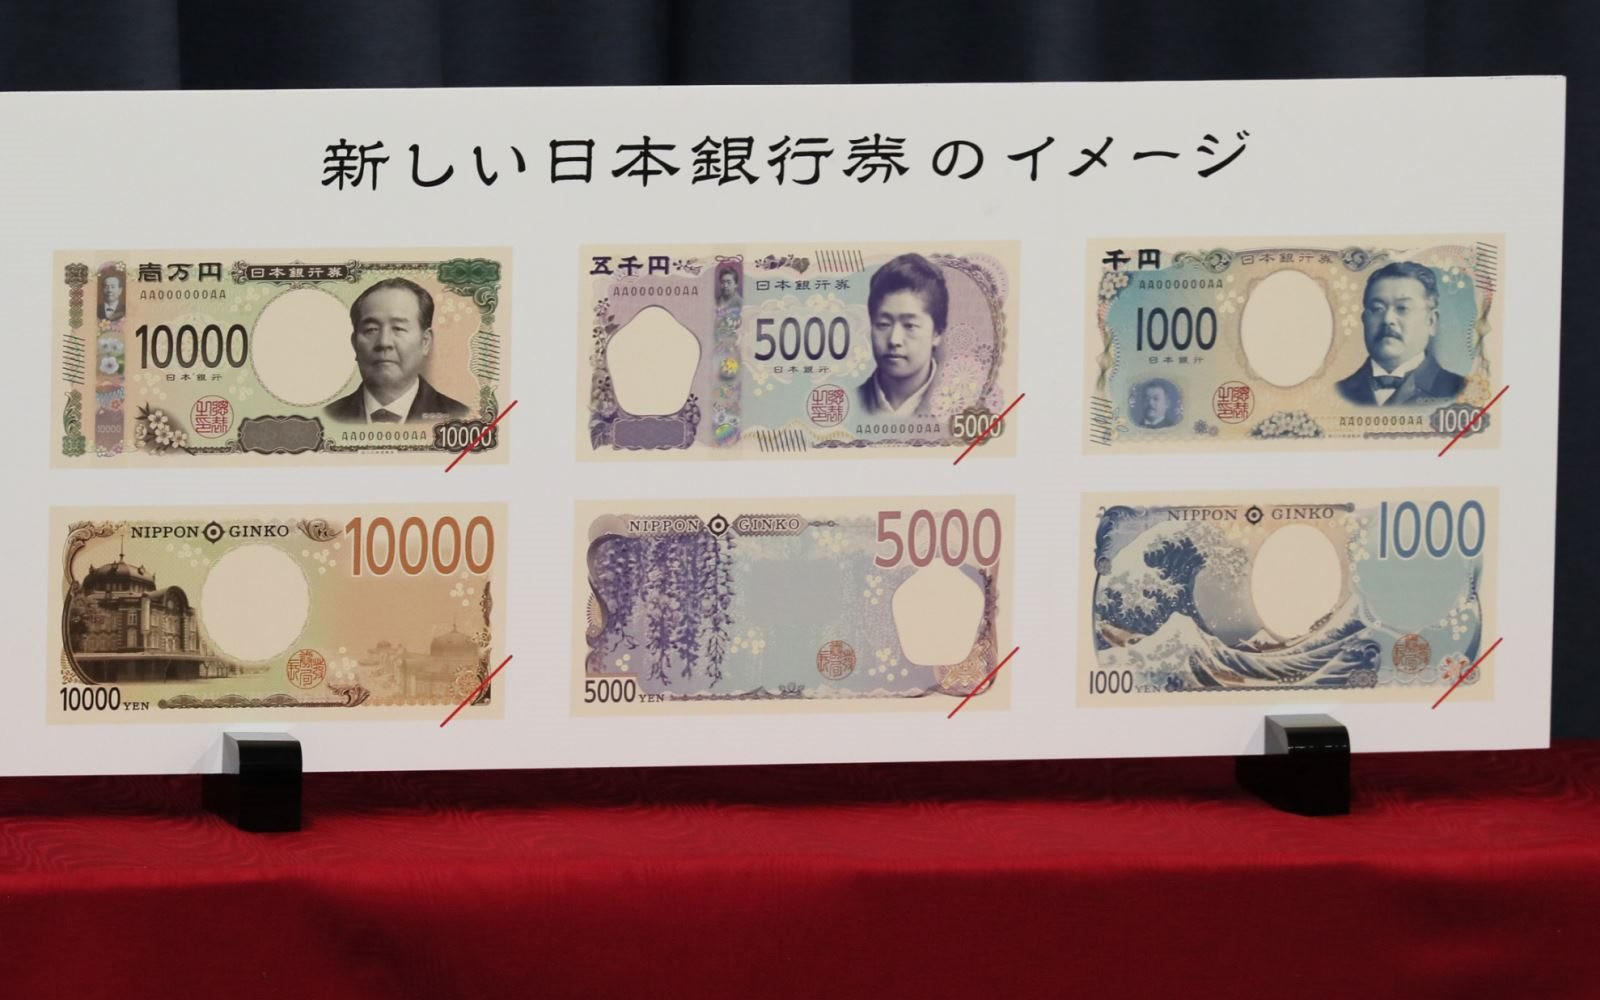 Khám phá đồng tiền in 3D của Nhật Bản, một công nghệ sản xuất đồng tiền độc đáo và tiên tiến. Hãy xem hình ảnh để có cái nhìn toàn diện về sự độc đáo và tinh tế trong từng chi tiết của đồng tiền đặc biệt này.